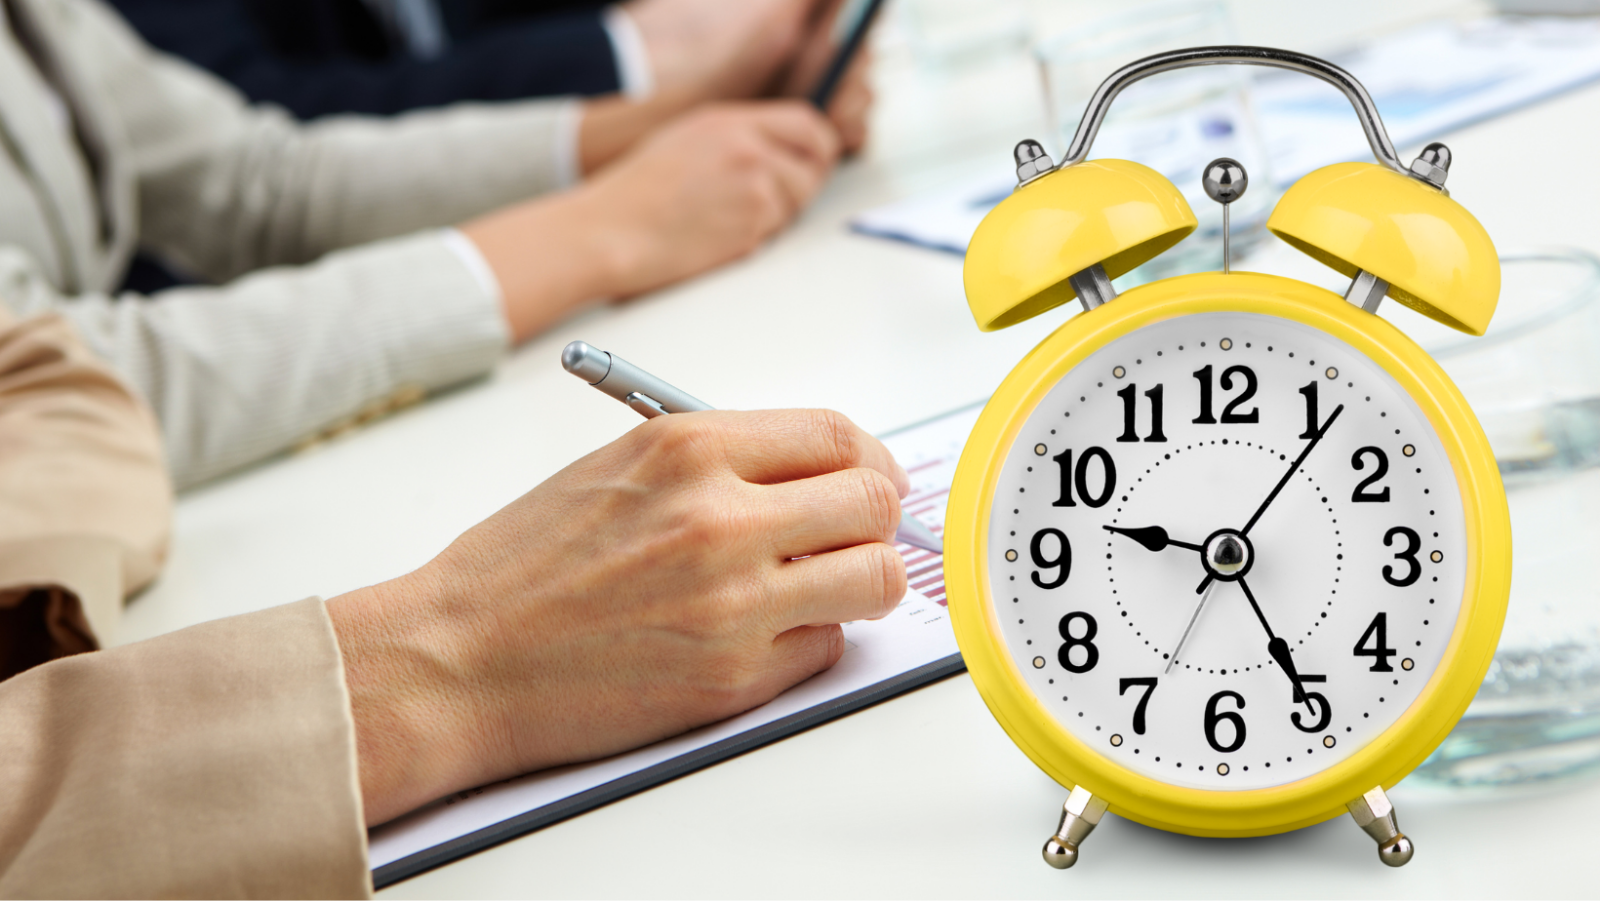 Reducción de la jornada laboral: ¿Cómo quedarán los horarios de trabajo cuando se apruebe la reforma?